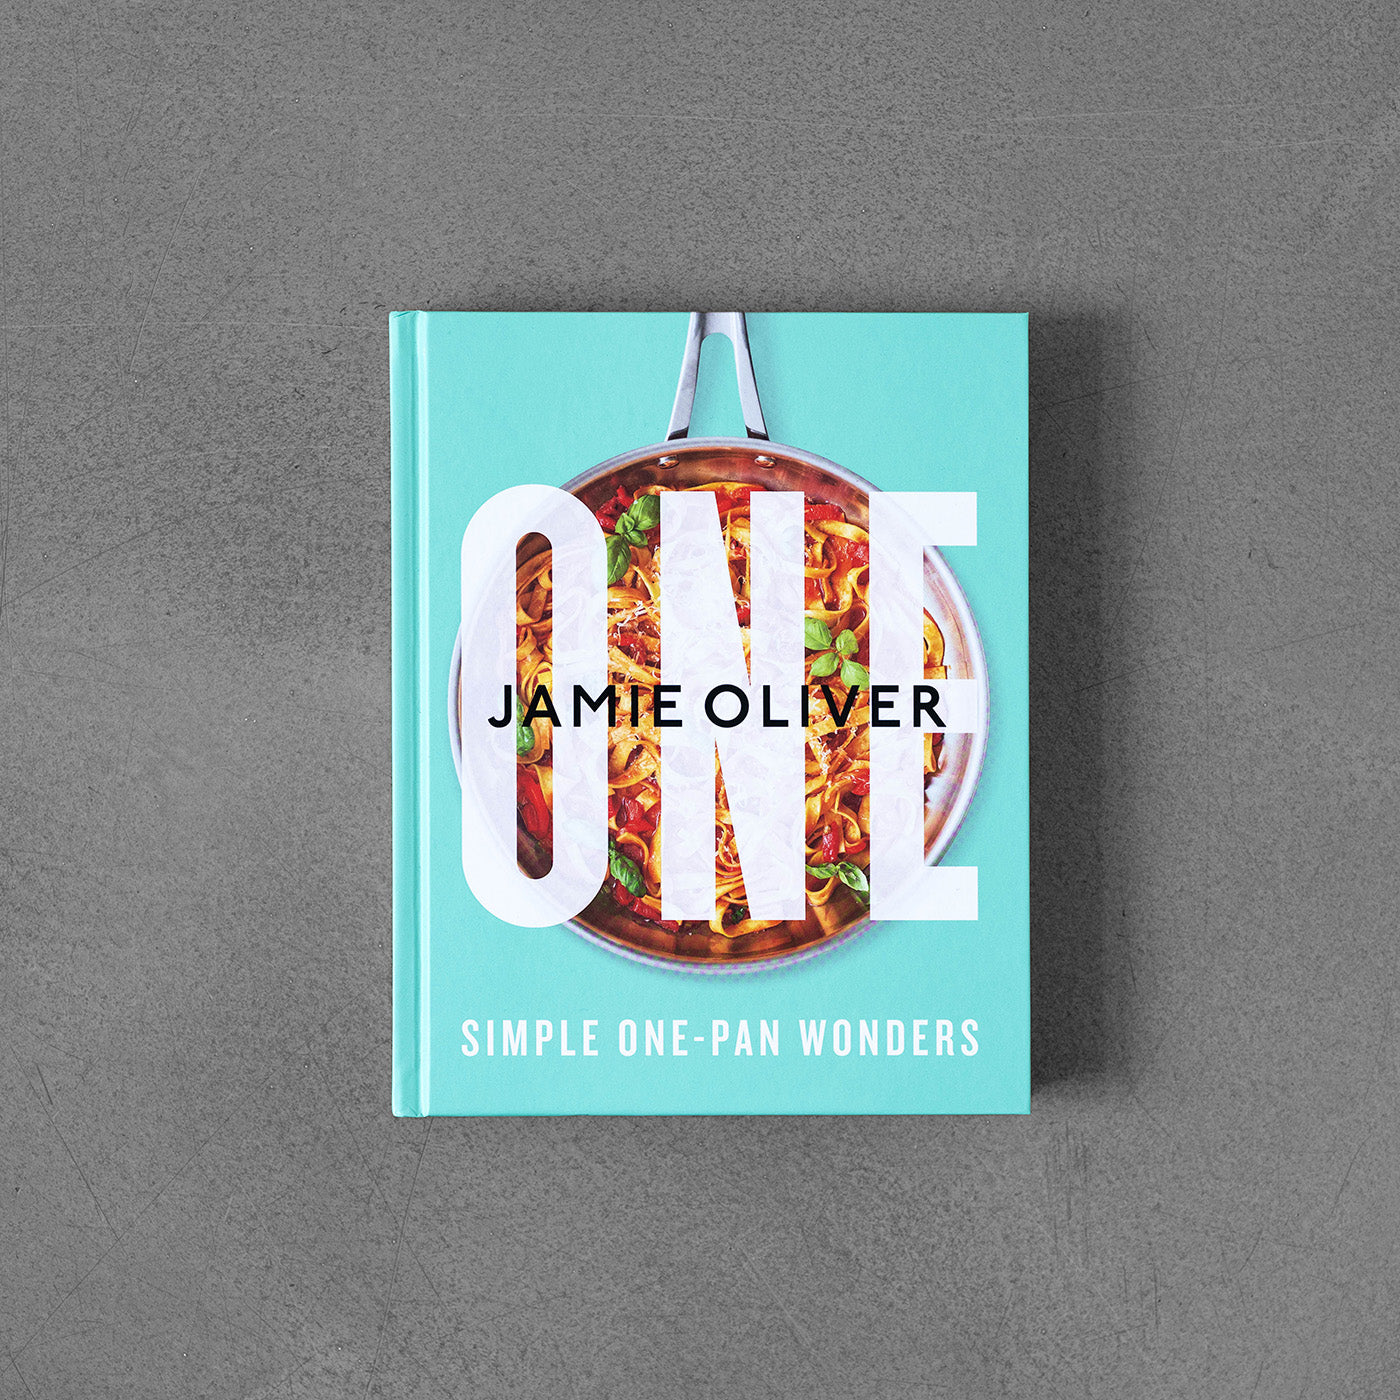 One: Simple One-Pan Wonders - Jamie Oliver